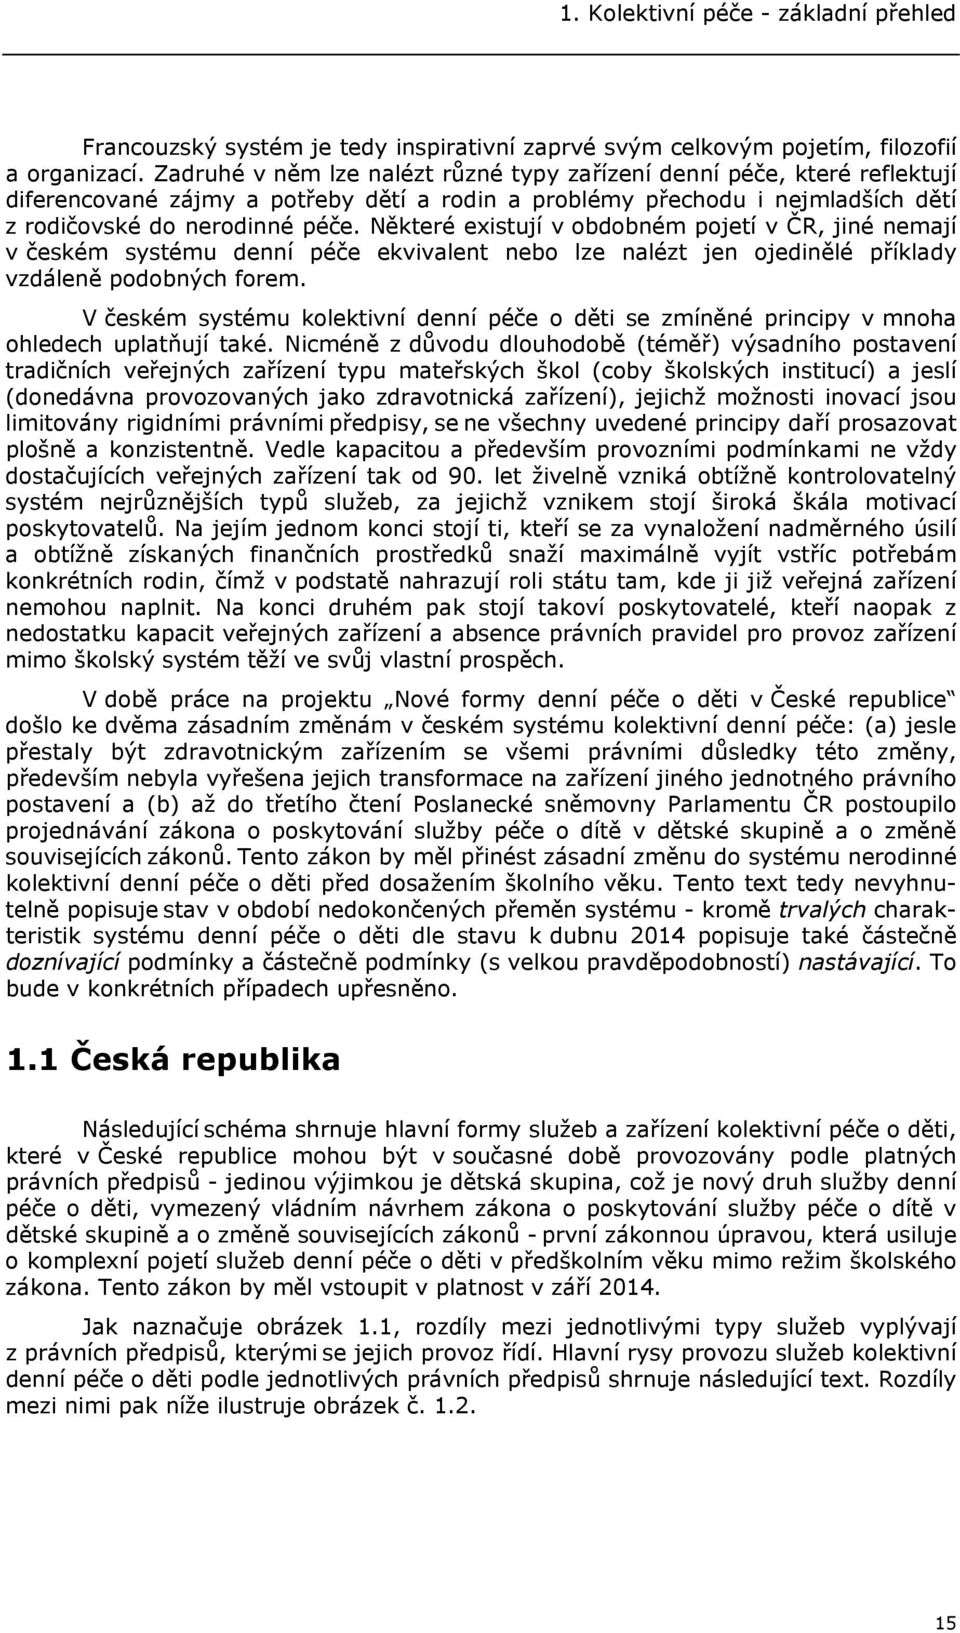 Některé existují v obdobném pojetí v ČR, jiné nemají v českém systému denní péče ekvivalent nebo lze nalézt jen ojedinělé příklady vzdáleně podobných forem.